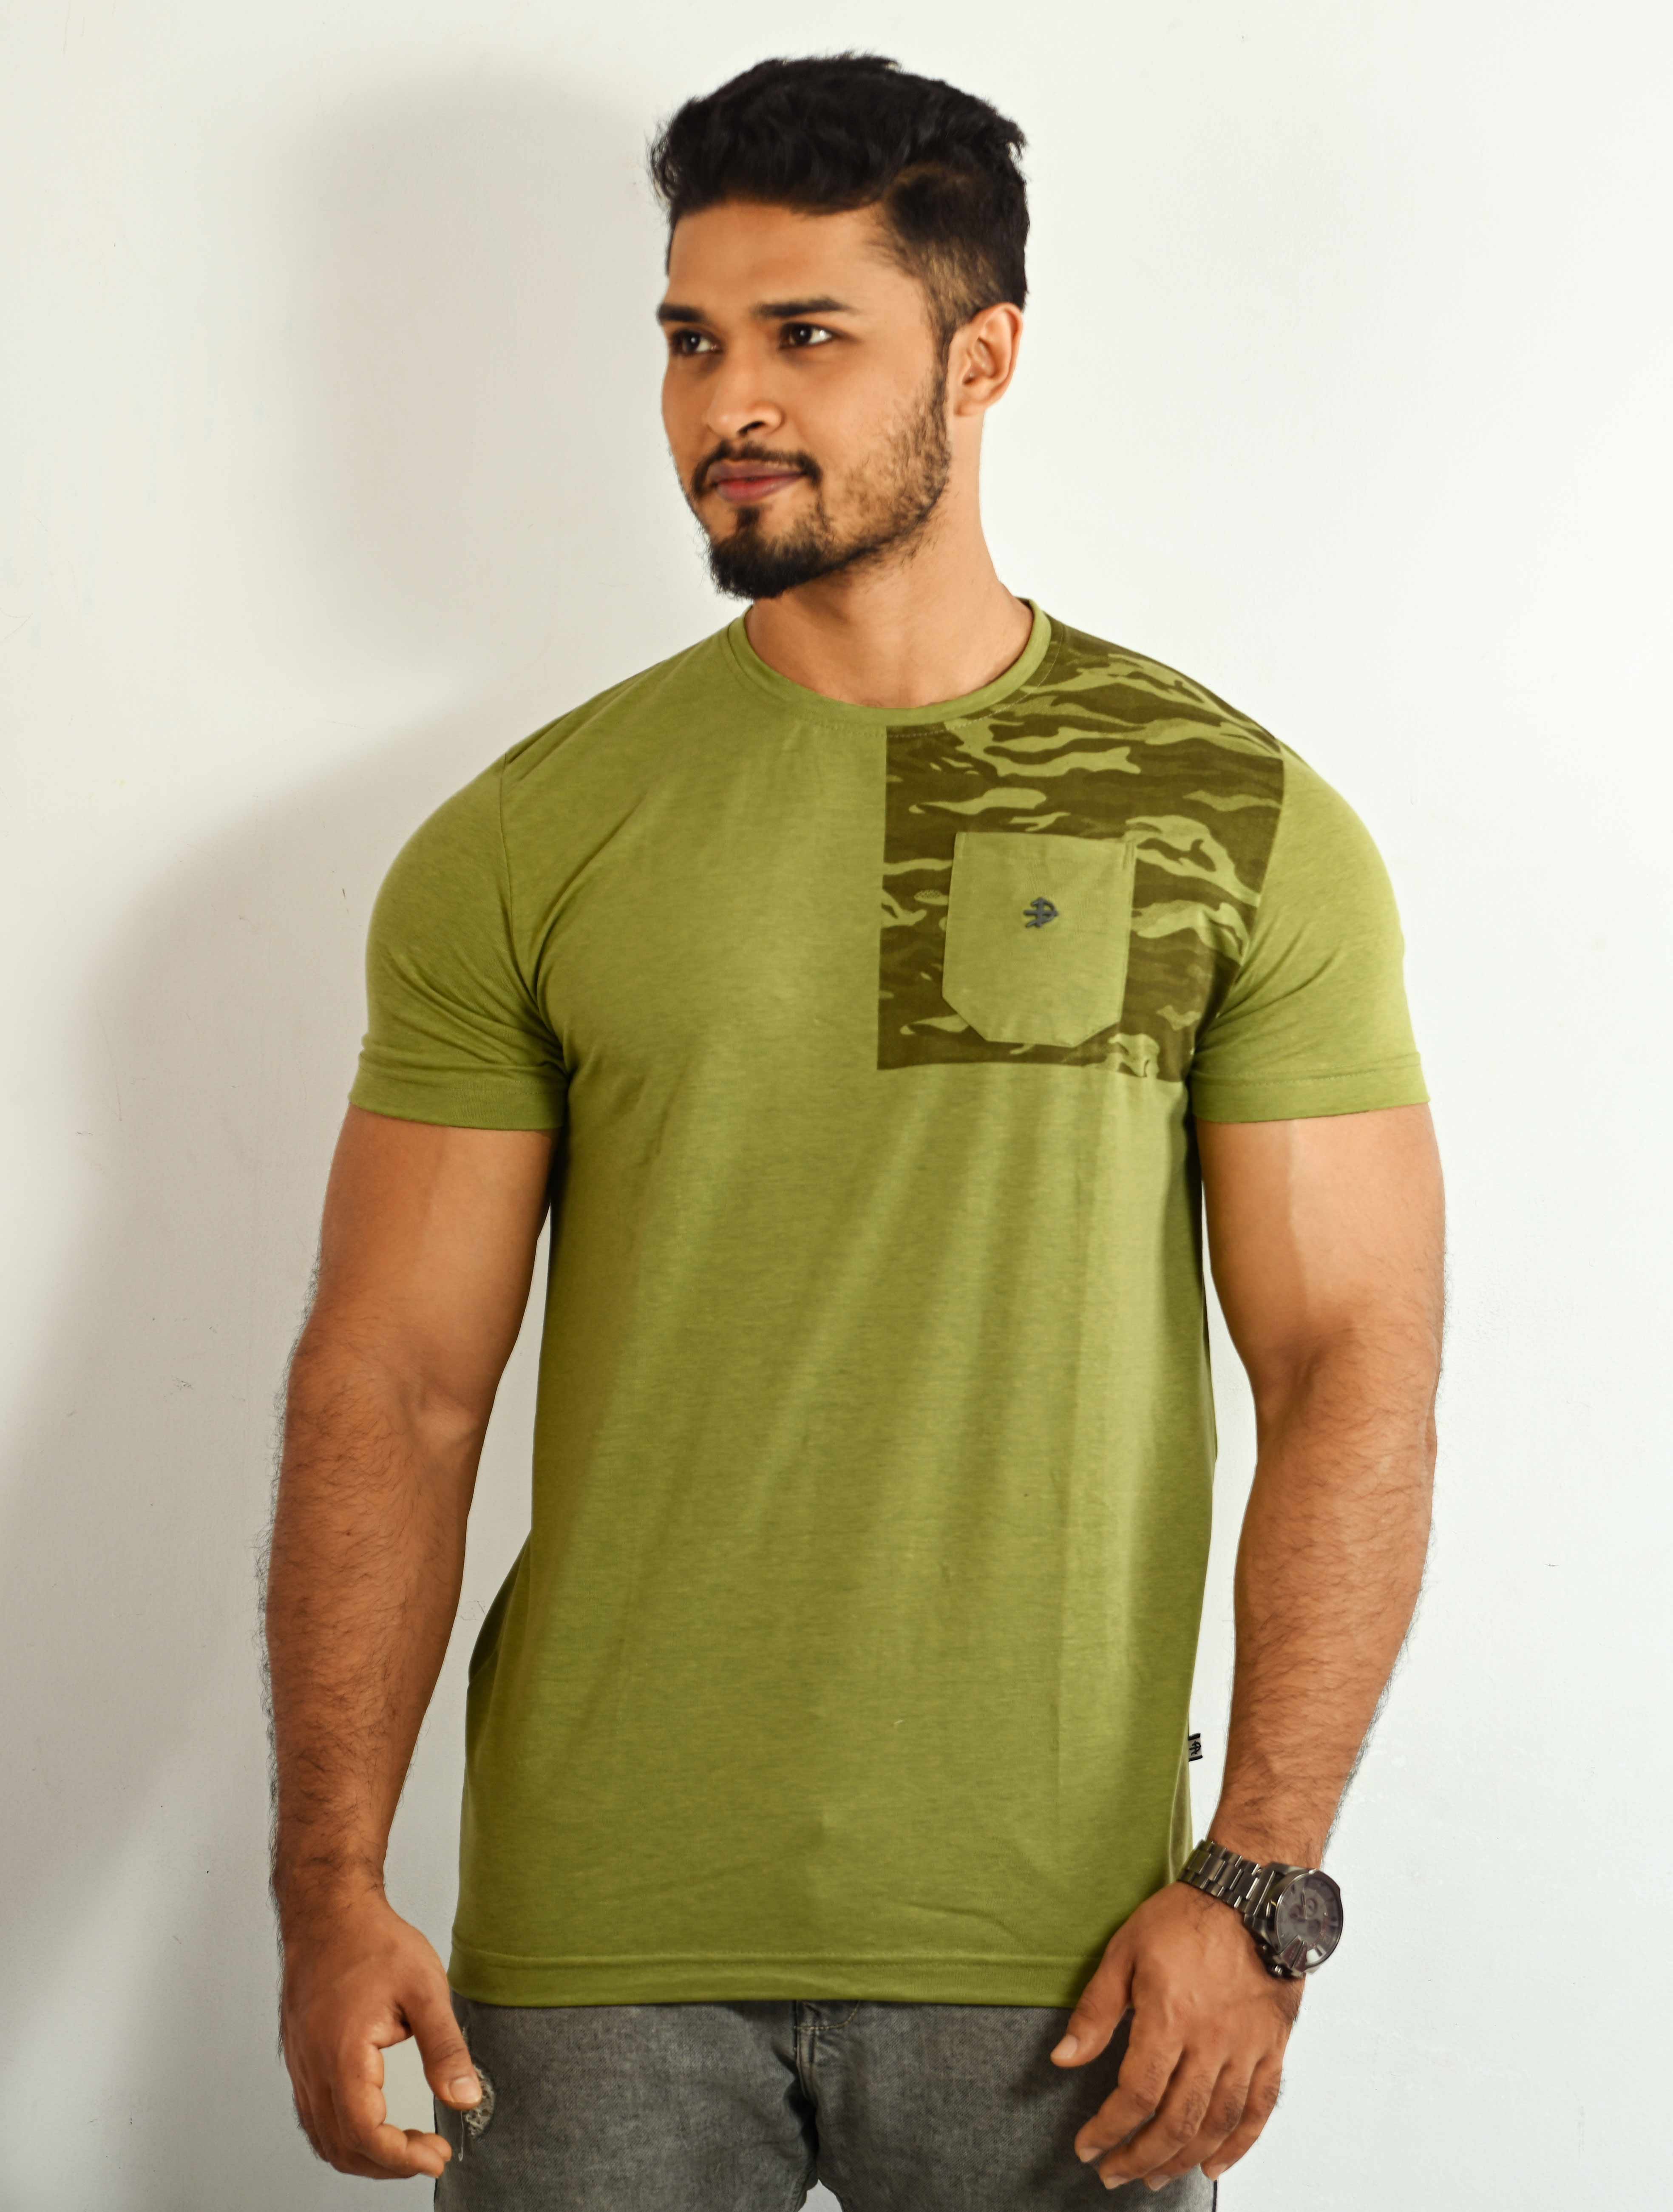 Partial Camo Printed Mens T-Shirt